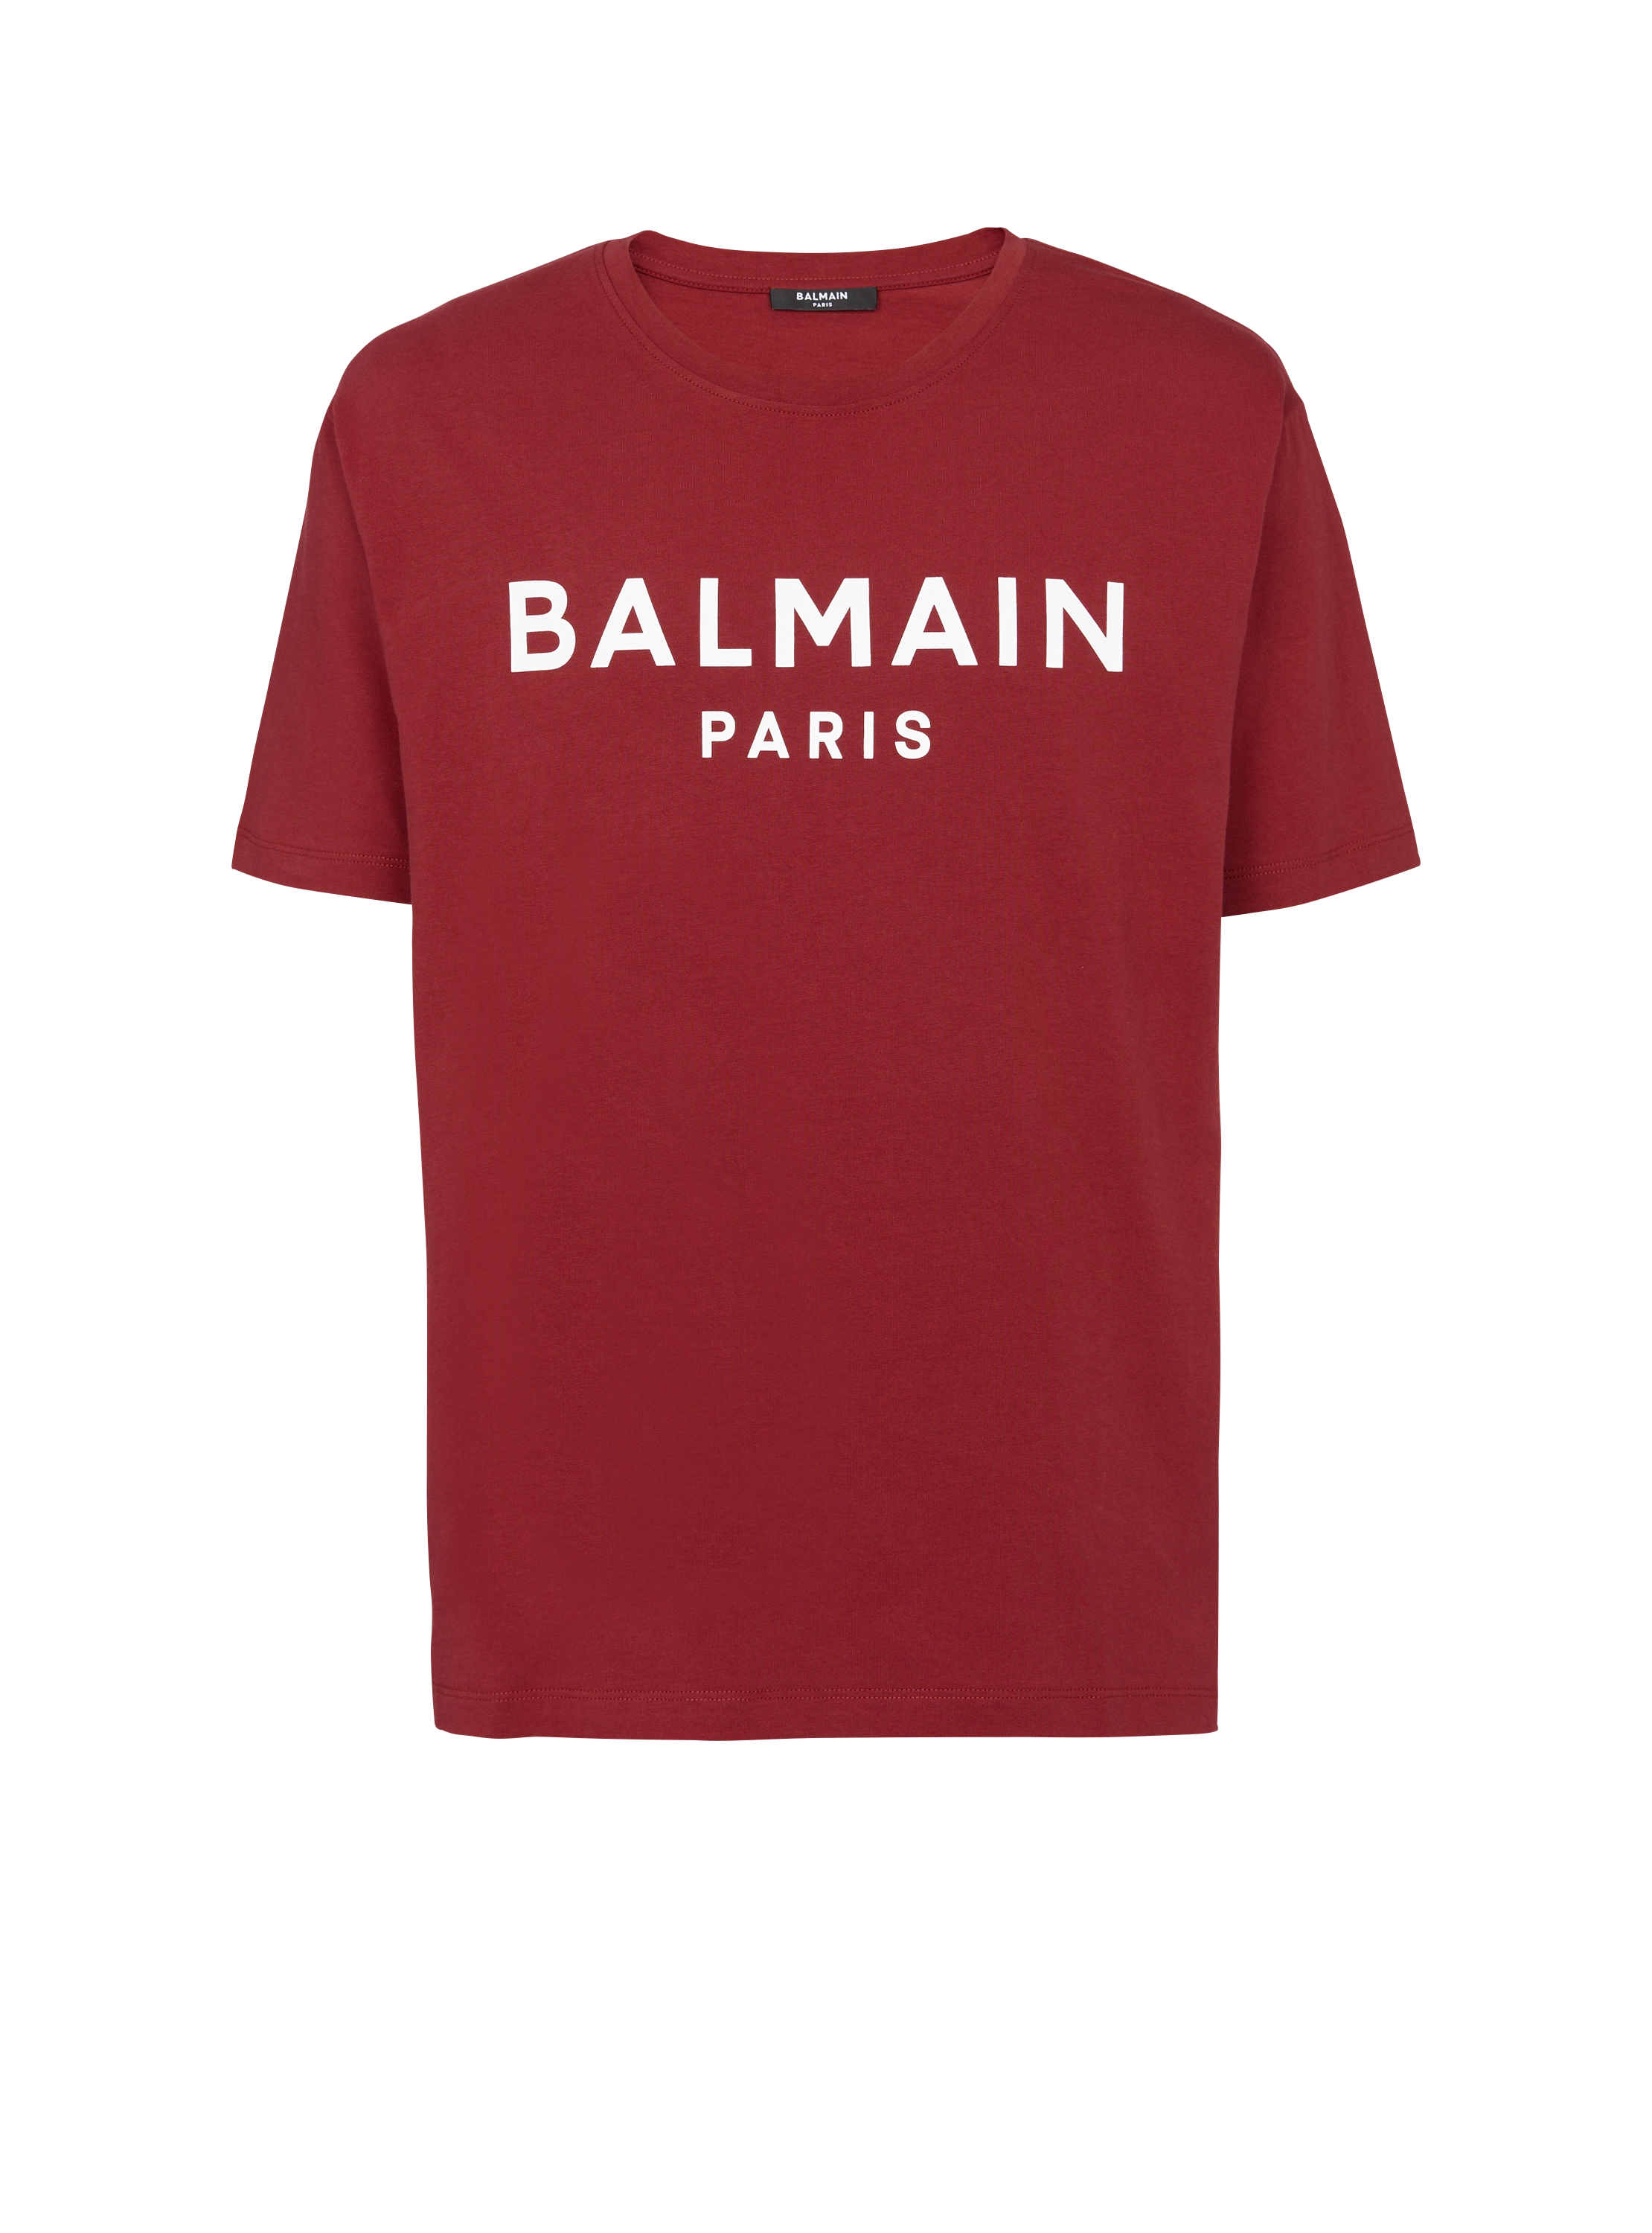 Balmain Paris T-shirt, rot, hi-res